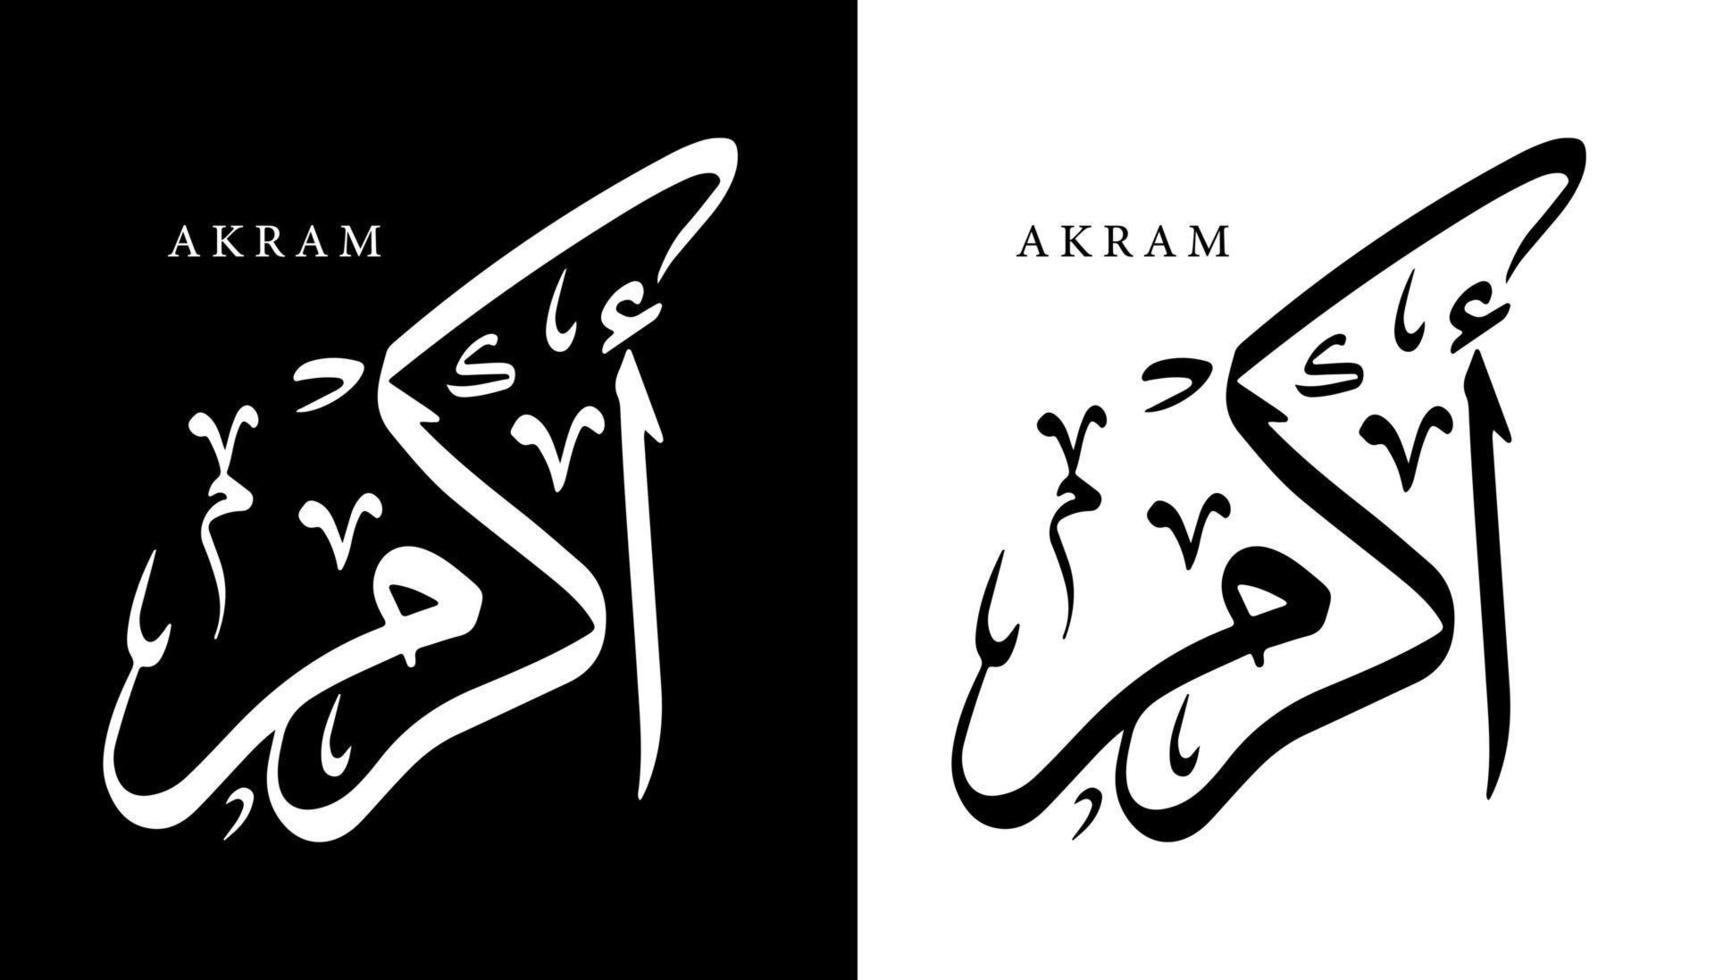 nome della calligrafia araba tradotto 'akram' lettere arabe alfabeto font lettering logo islamico illustrazione vettoriale